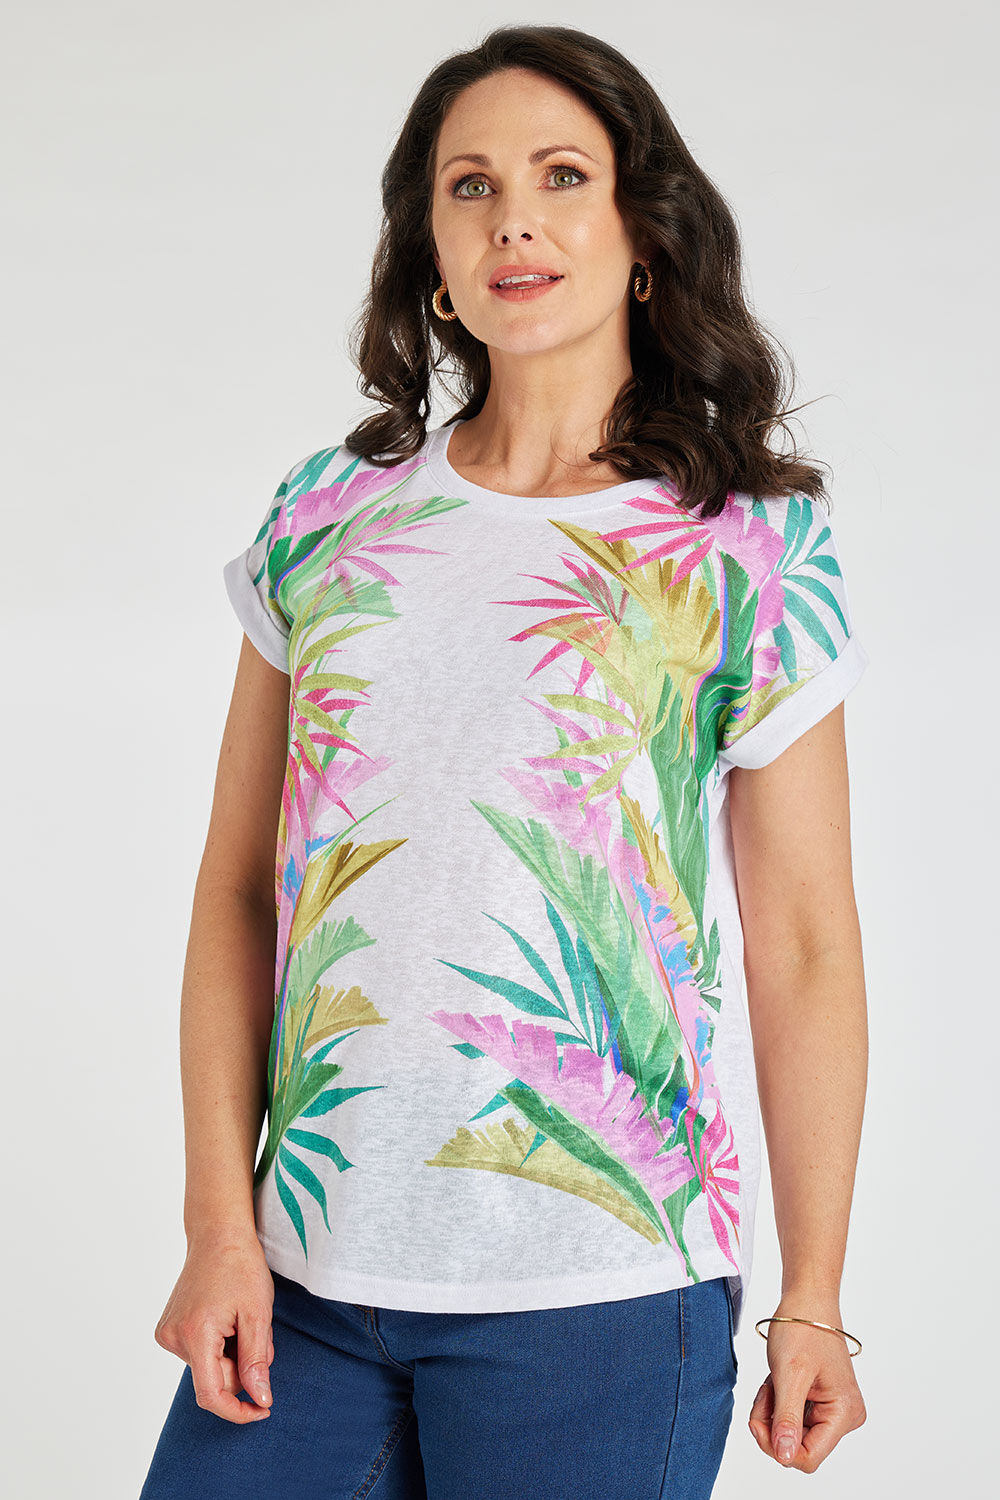 Bonmarche White Short Sleeve Palm Print Linen Look T-Shirt, Size: 12